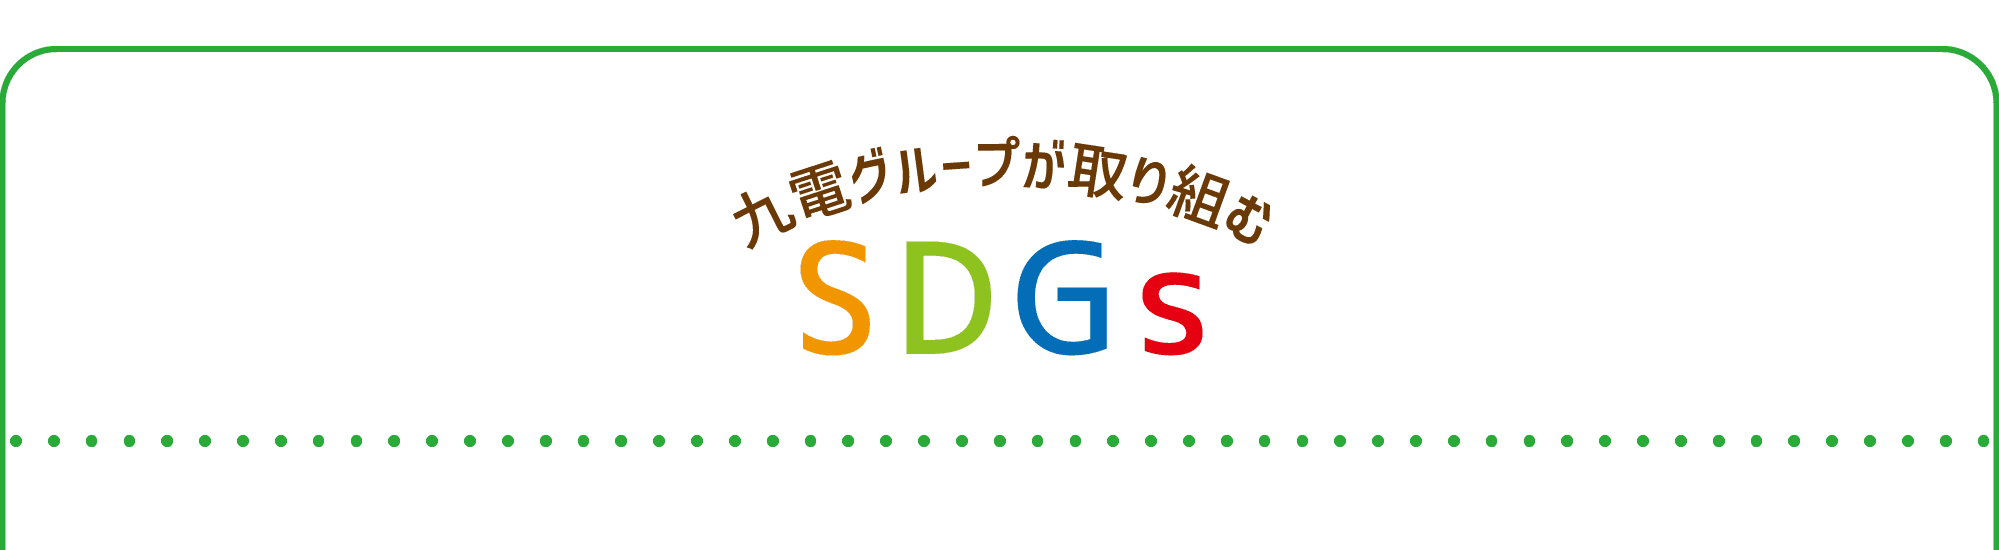 九州グループが取り組むSDGs